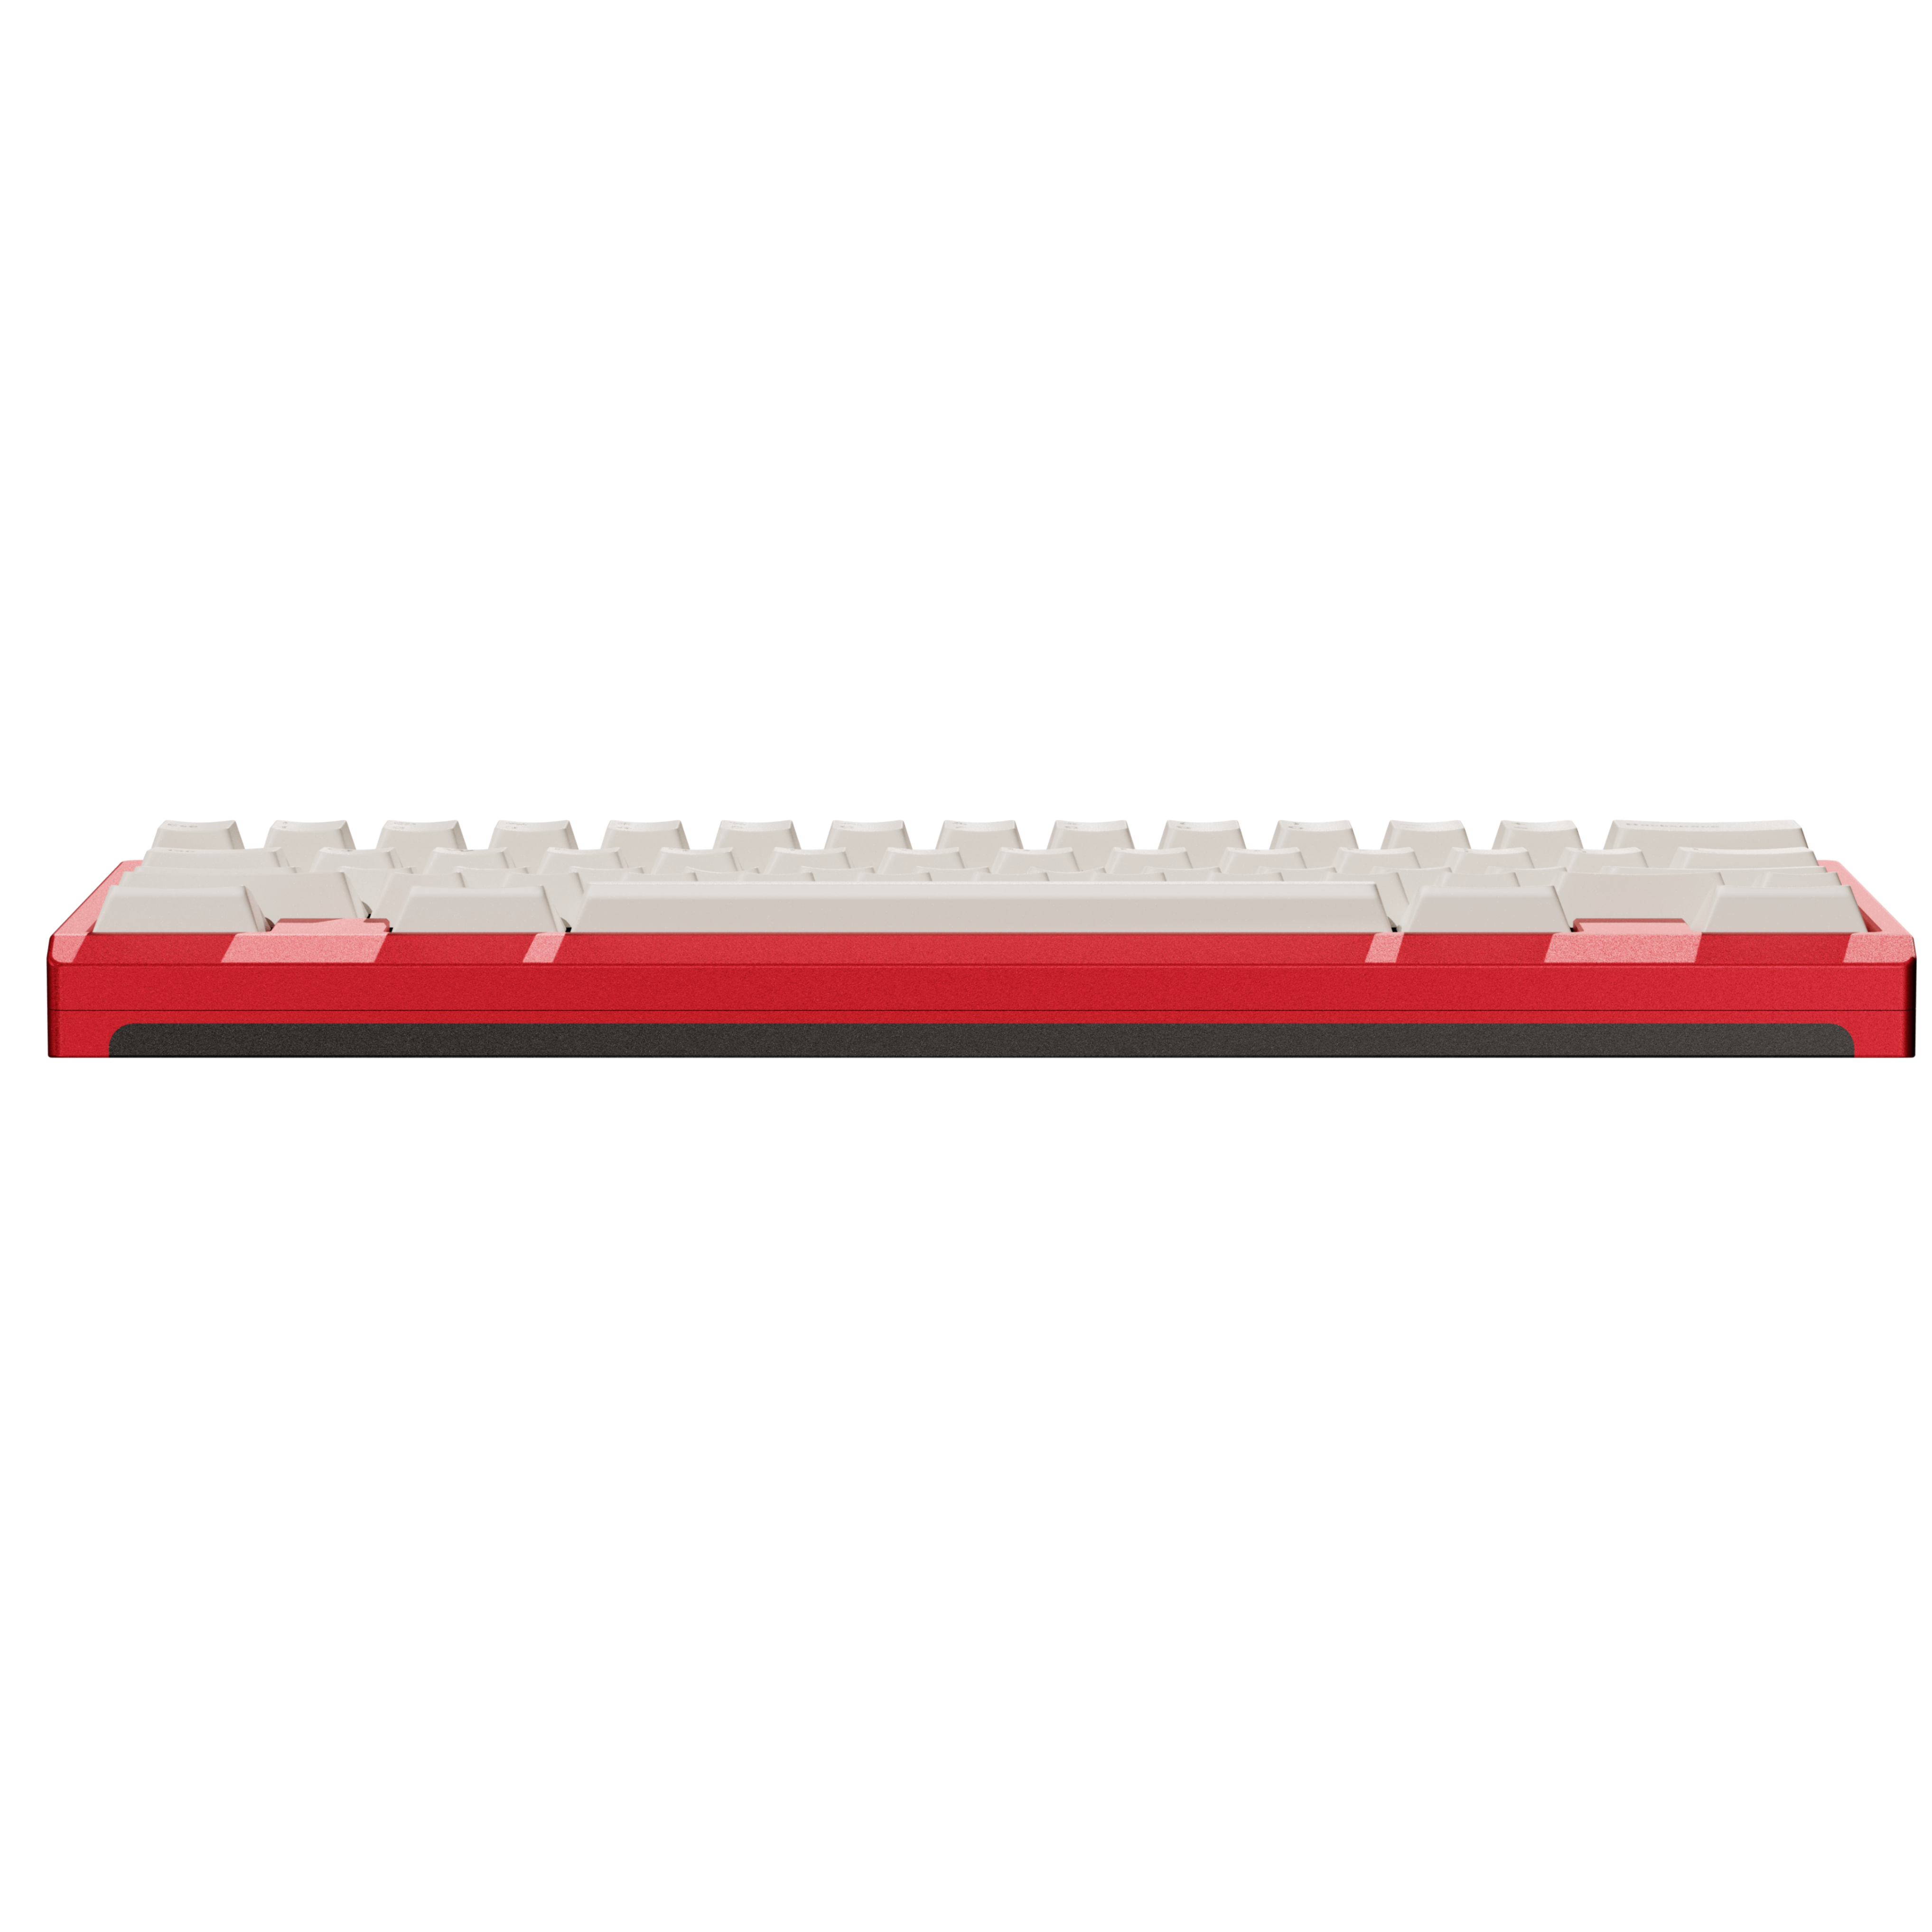 Tastierarossa Keyboard